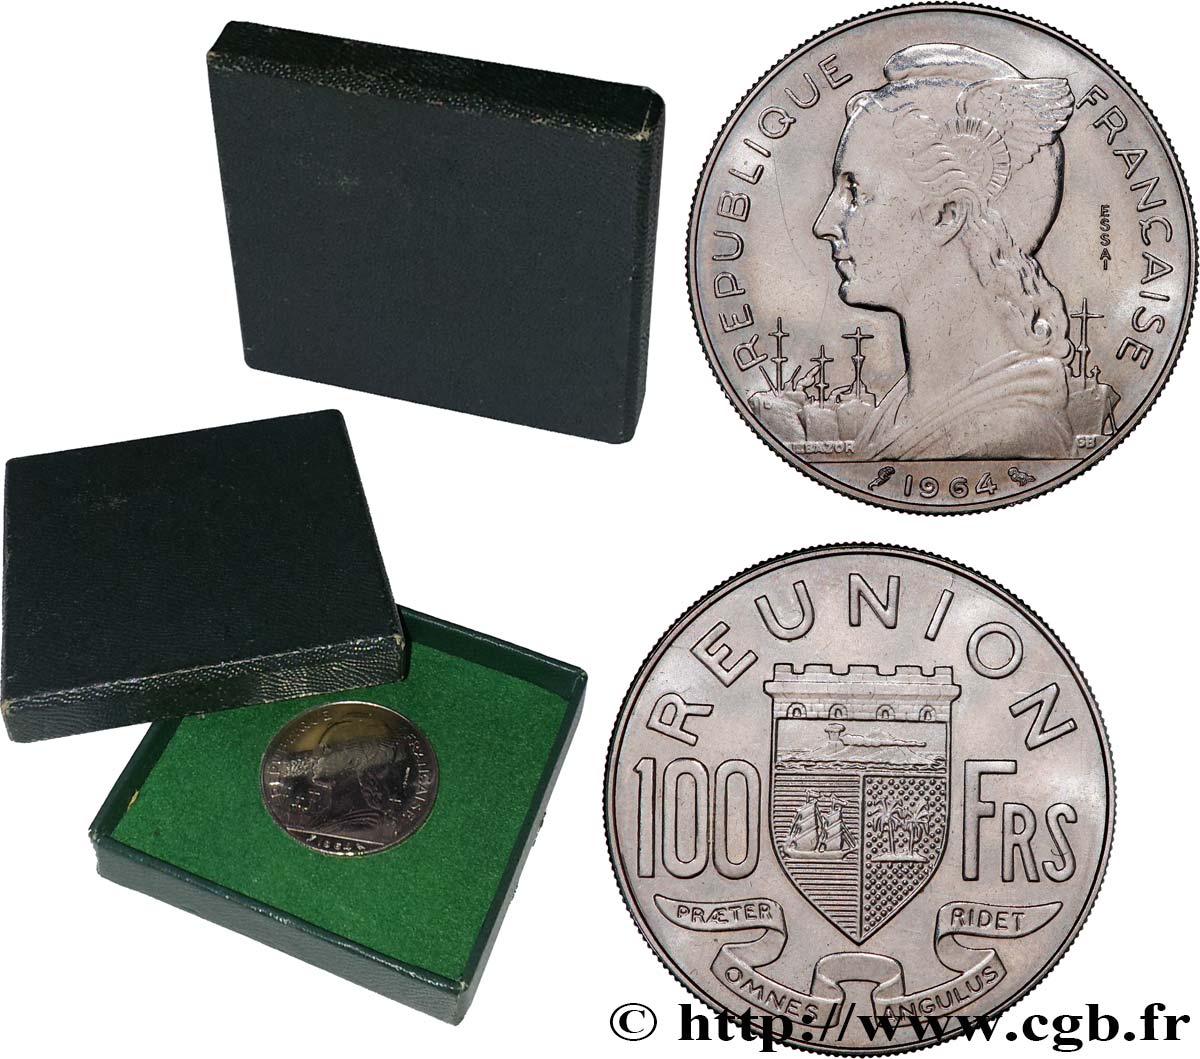 REUNION 100 Francs Essai 1964 Paris MS 